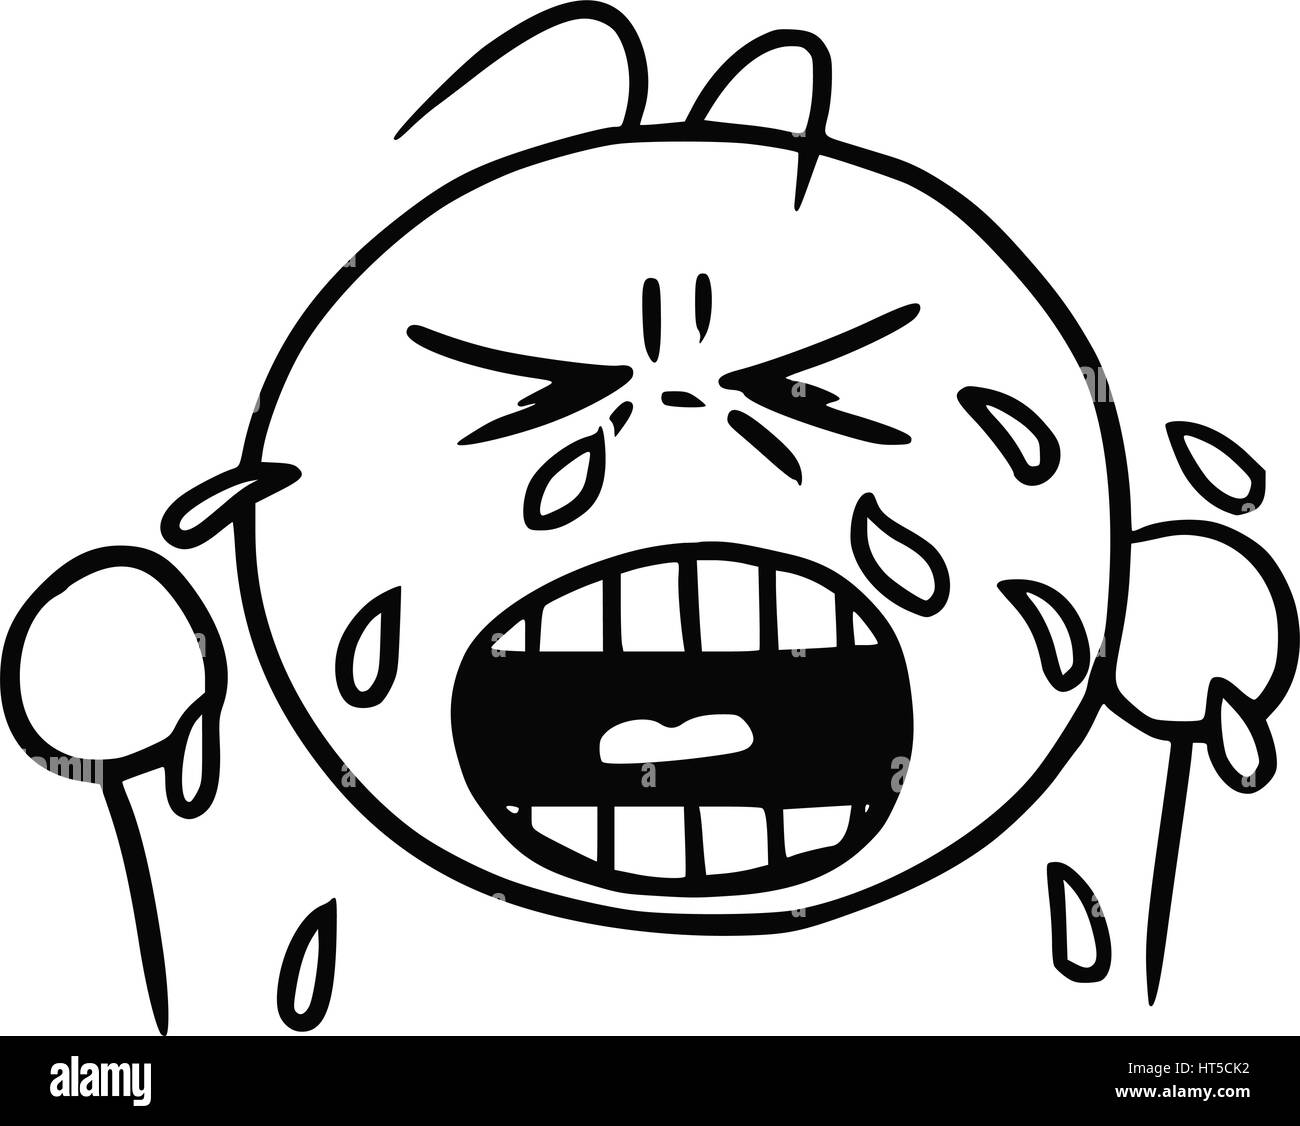 Cartoon-Vektor der Schrei Smiley mit Tränen zu weinen Stock Vektor